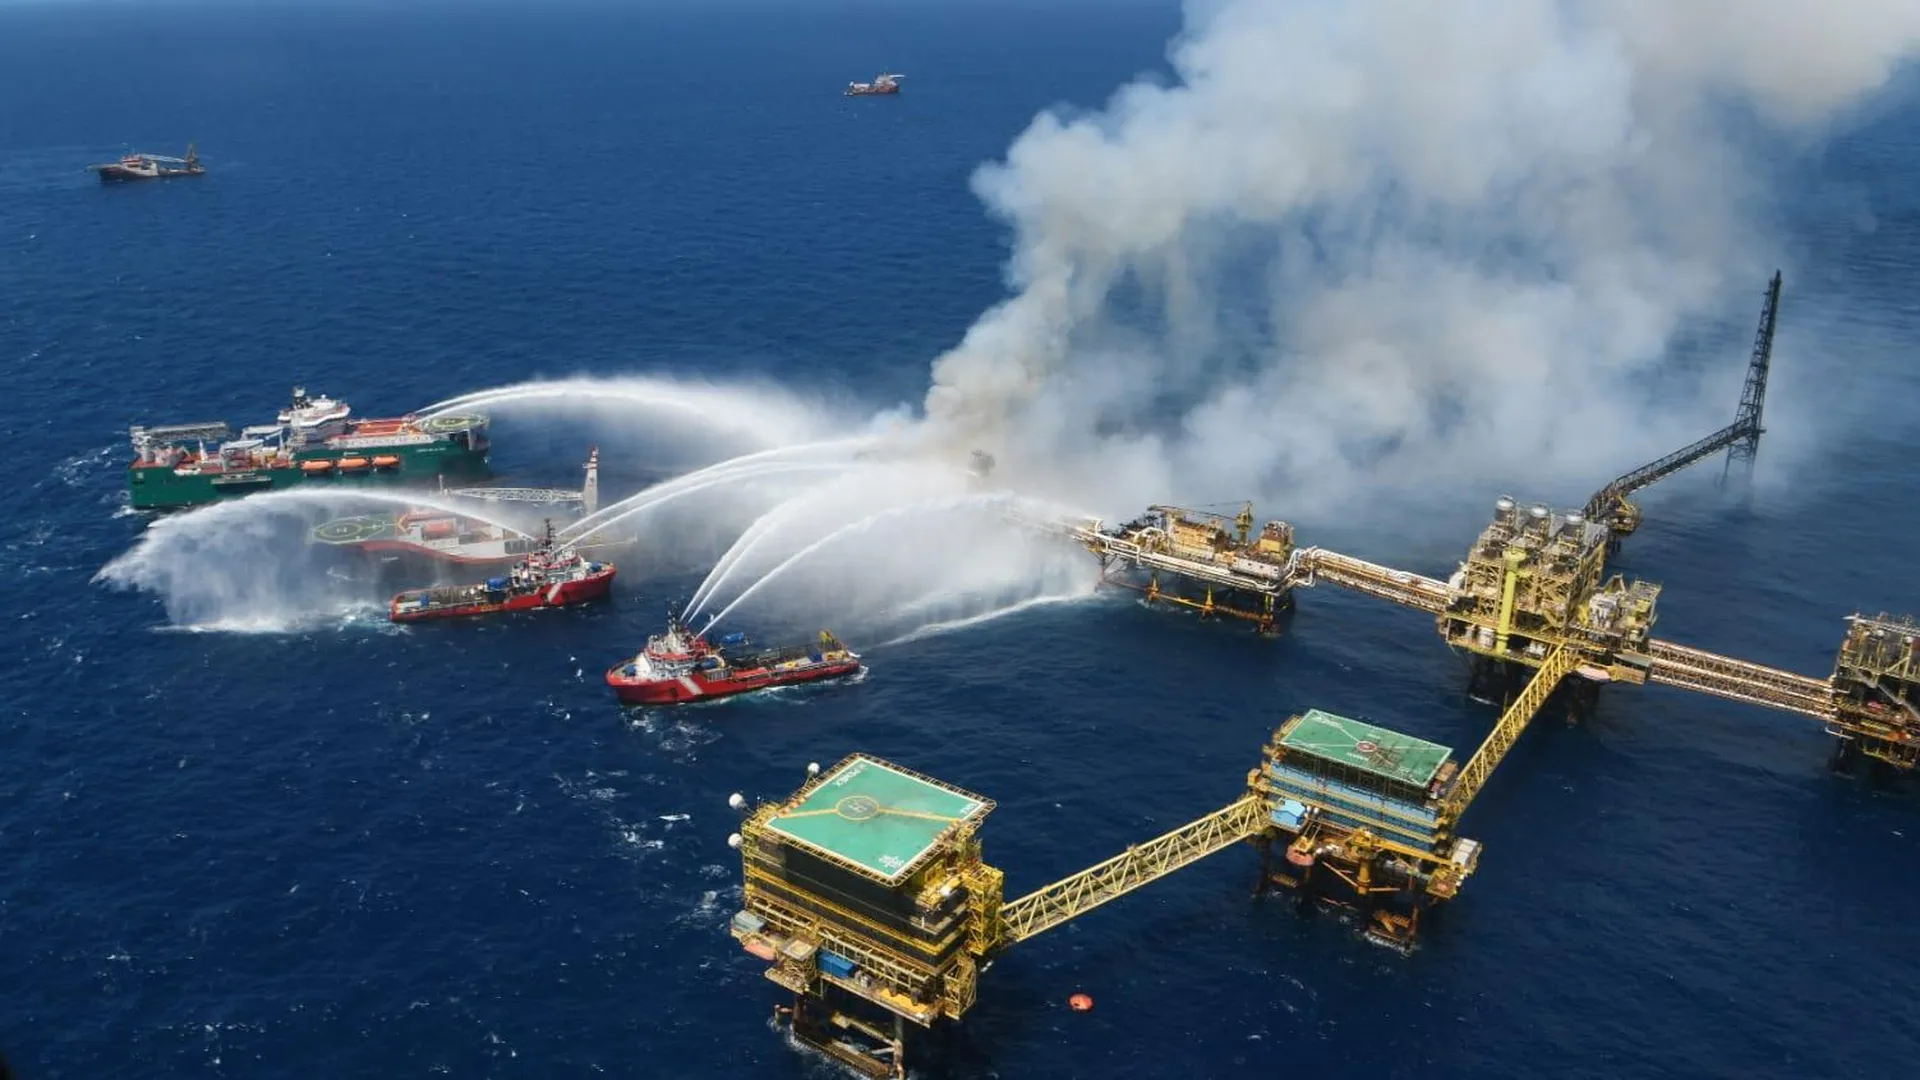 Гибнущее море. Нефтяная платформа в мексиканском заливе. Пожар на нефтяной платформе. Крупная авария на нефтяной платформе. Добыча газа.